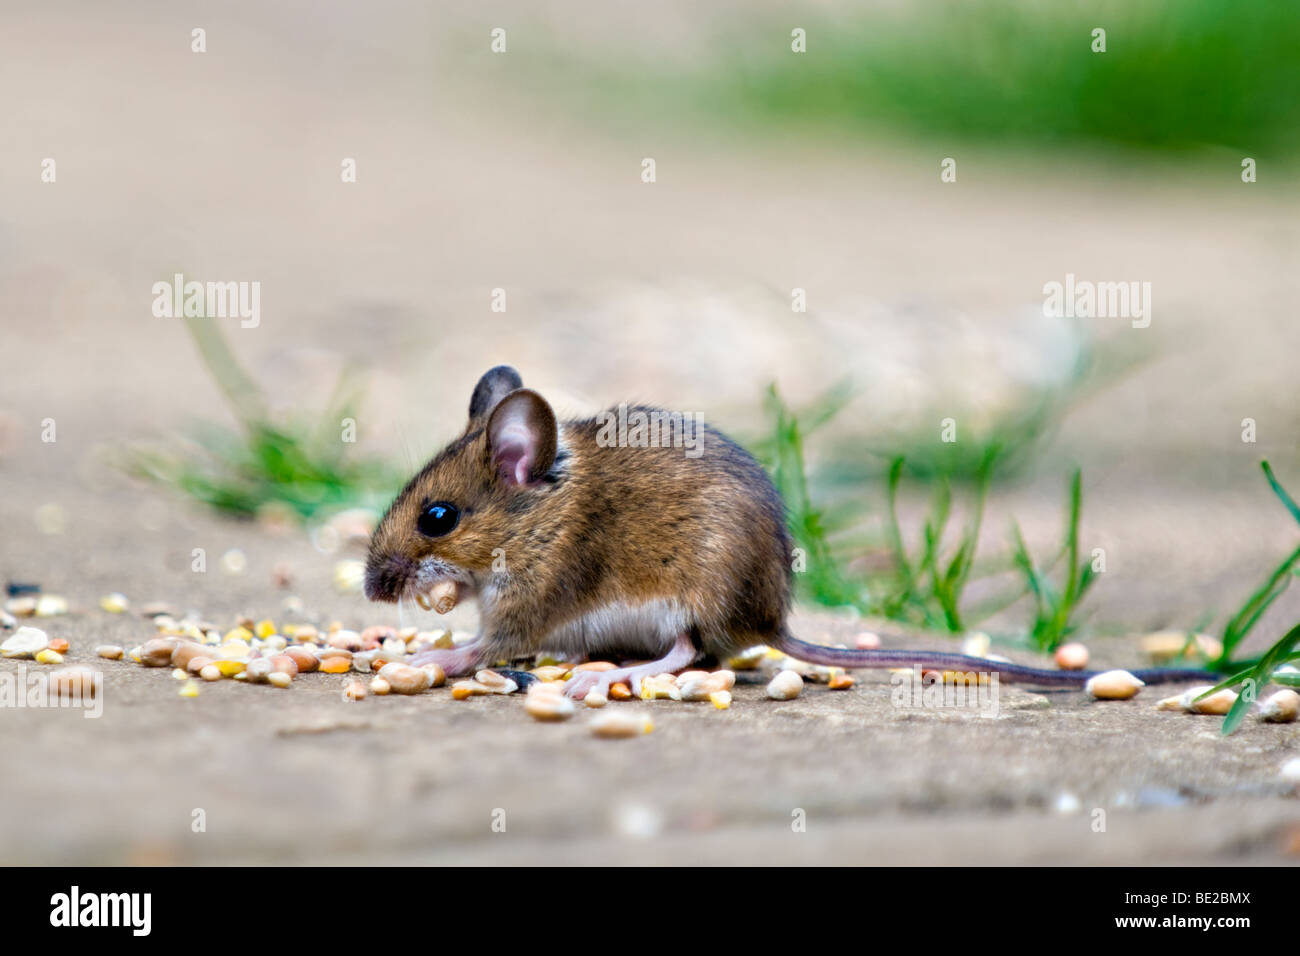 Waldmaus, auch bekannt als Feld oder Long-tailed Maus Essen Vogelfutter auf Terrasse im Garten mit Mund gefüllt mit Samen Stockfoto